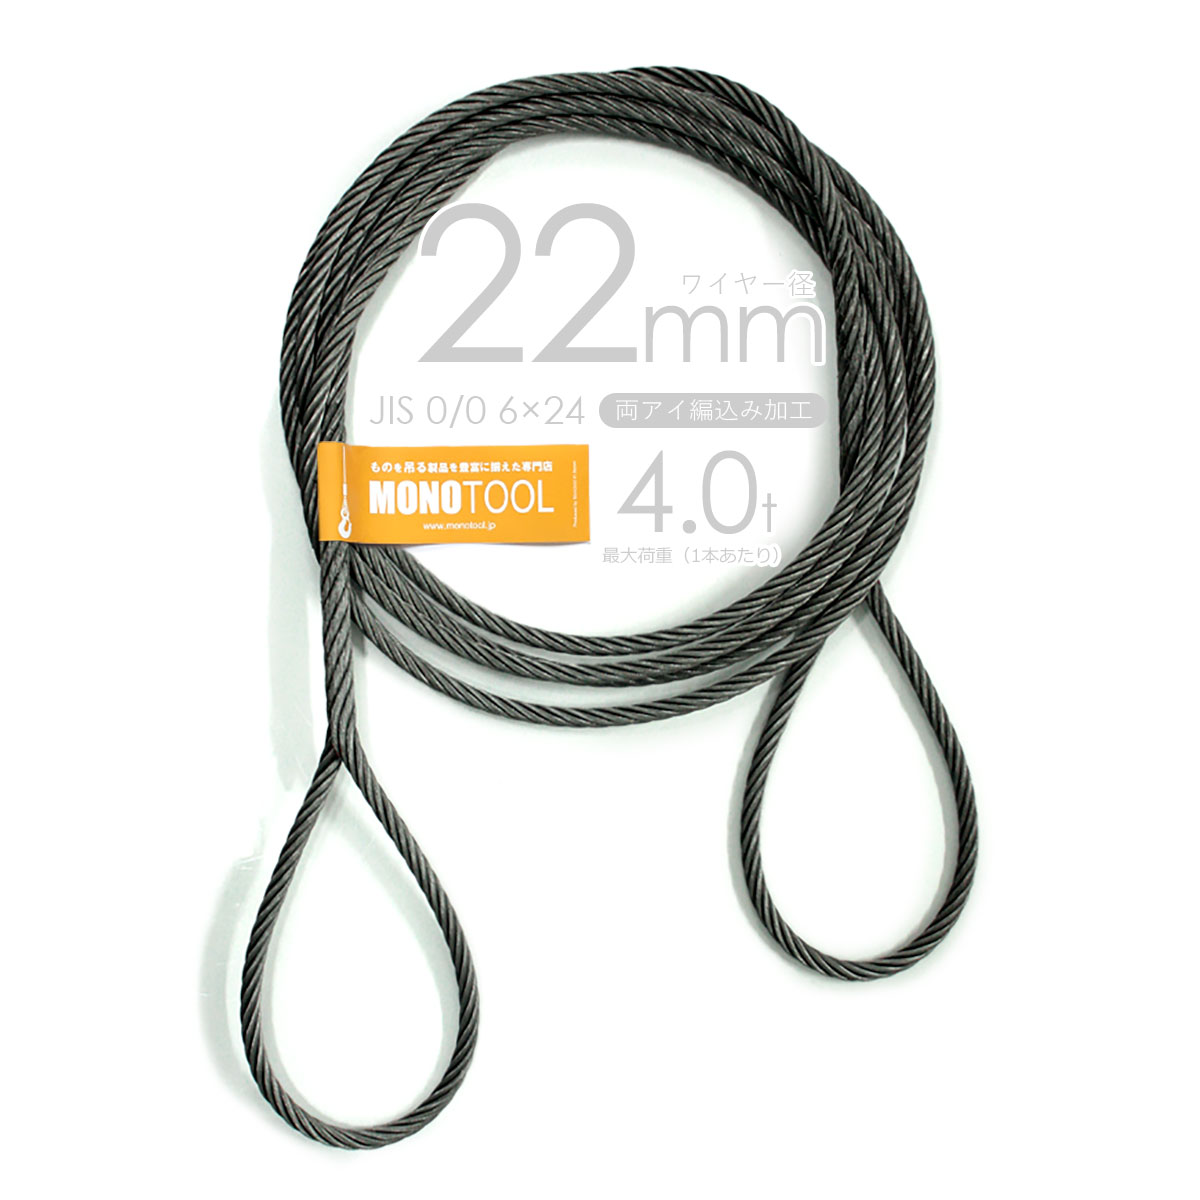 編み込みワイヤー JIS黒(O O) 22mm（7分）x7m 玉掛けワイヤーロープ 2本組 フレミッシュ 玉掛ワイヤー - 2